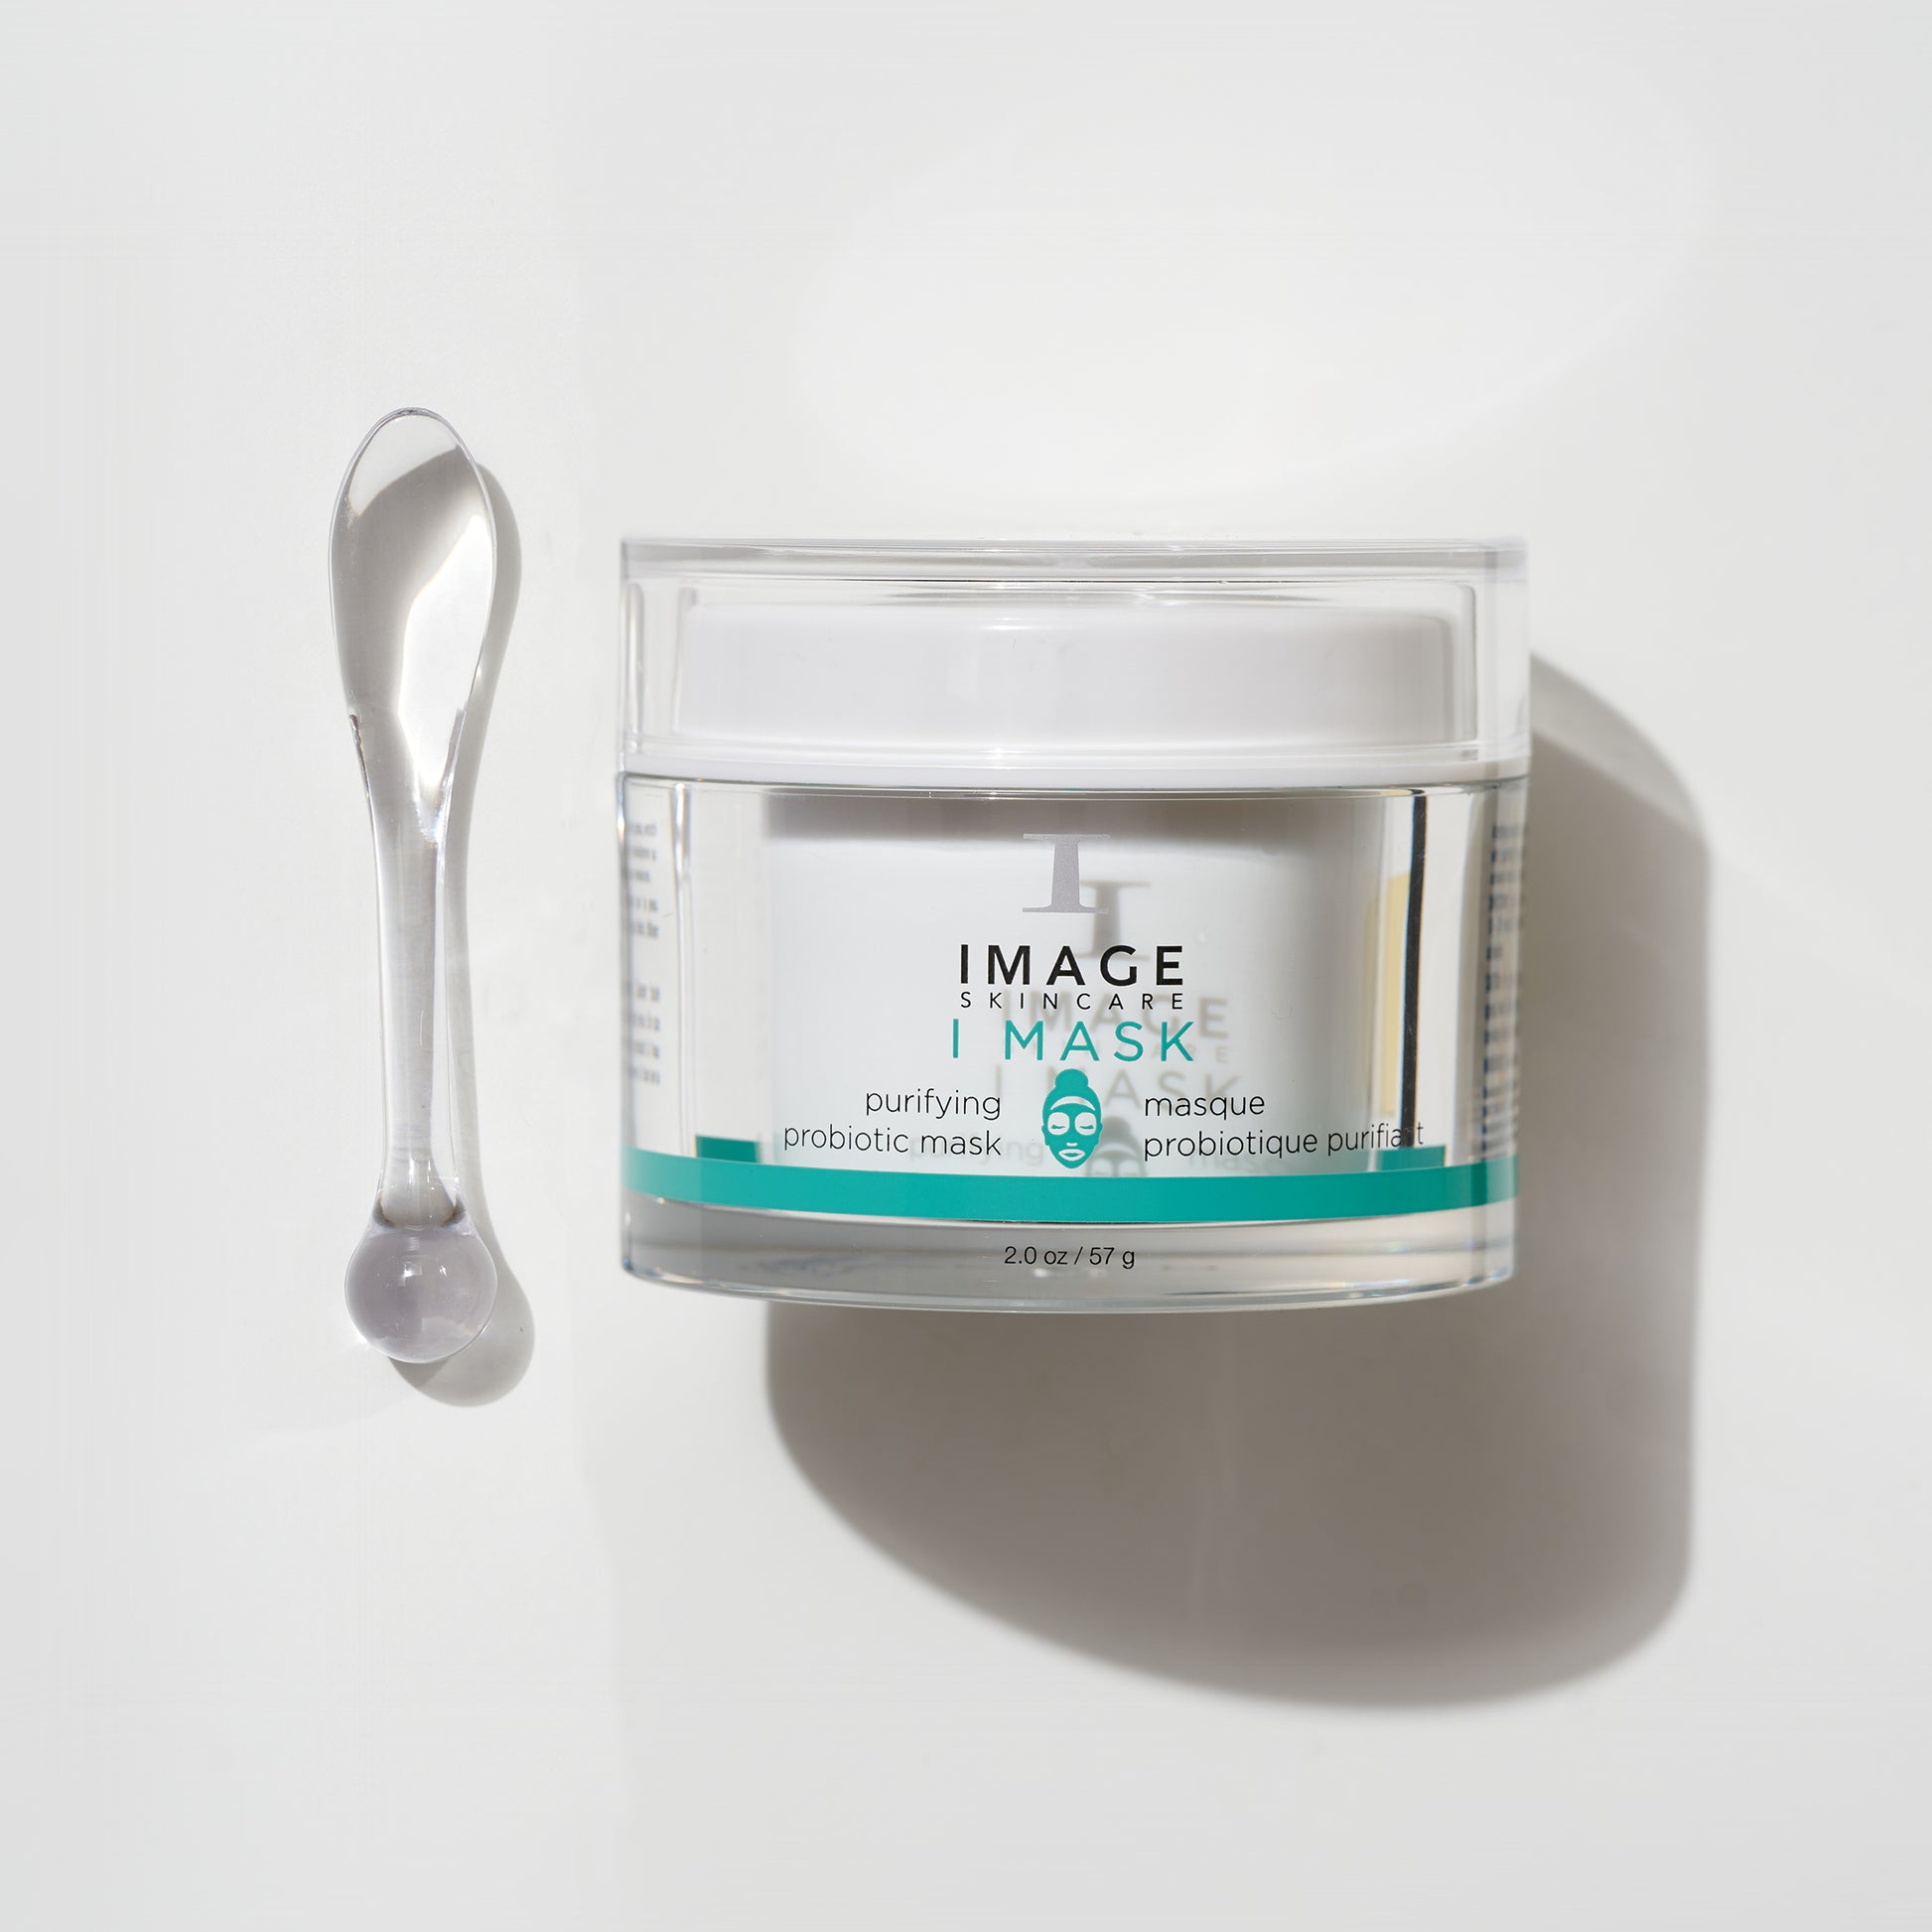 I MASK Purifying Probiotic Mask, Image Skincare